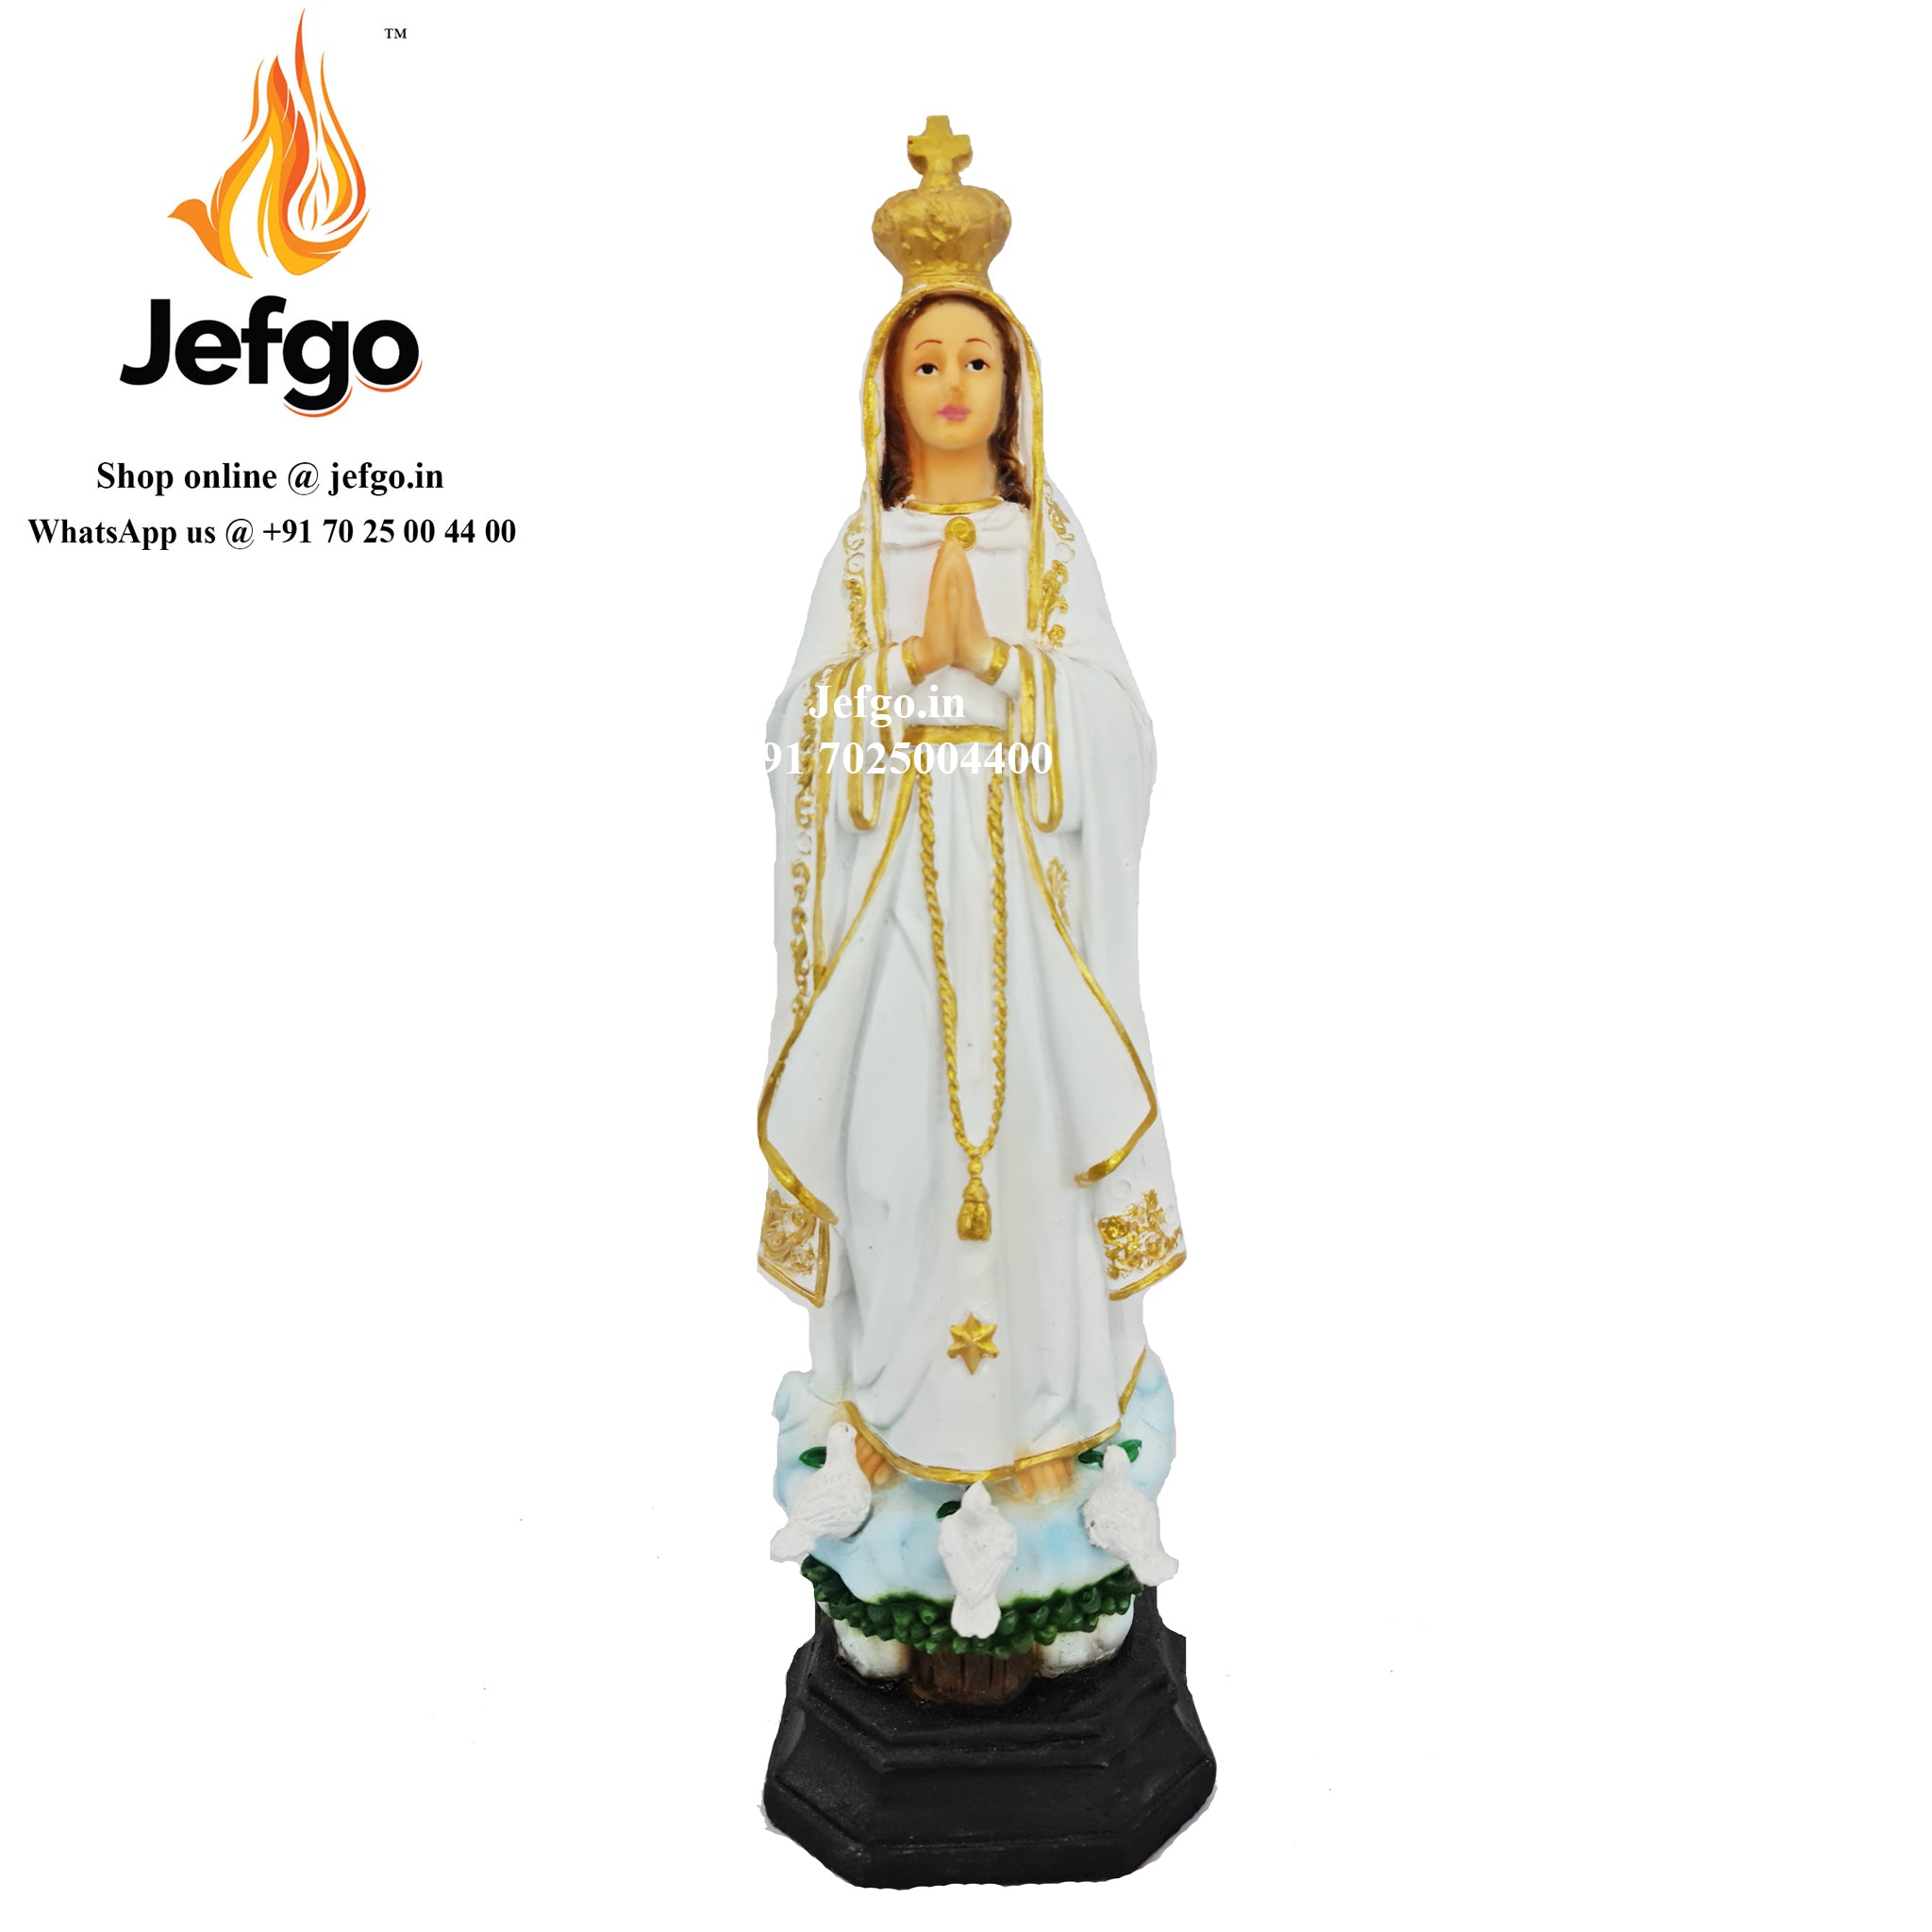 Fatima Statue for sale Online in India